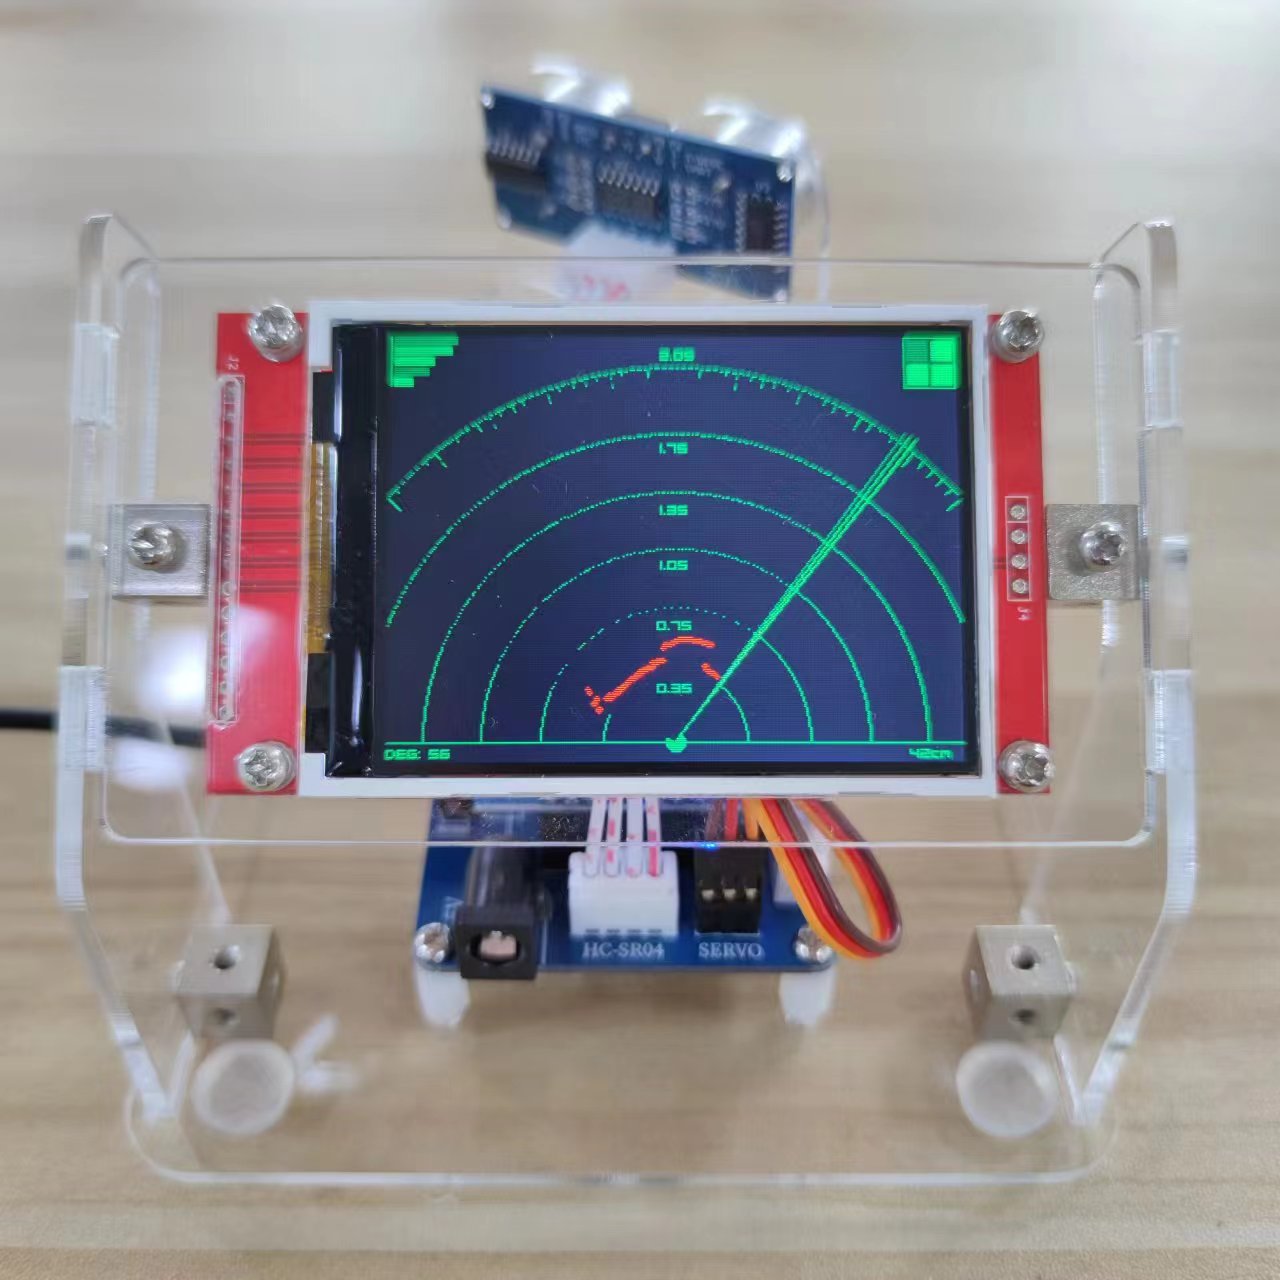 新款超声波雷达扫描学生科技制作diy创意玩具手工少儿编程探测机